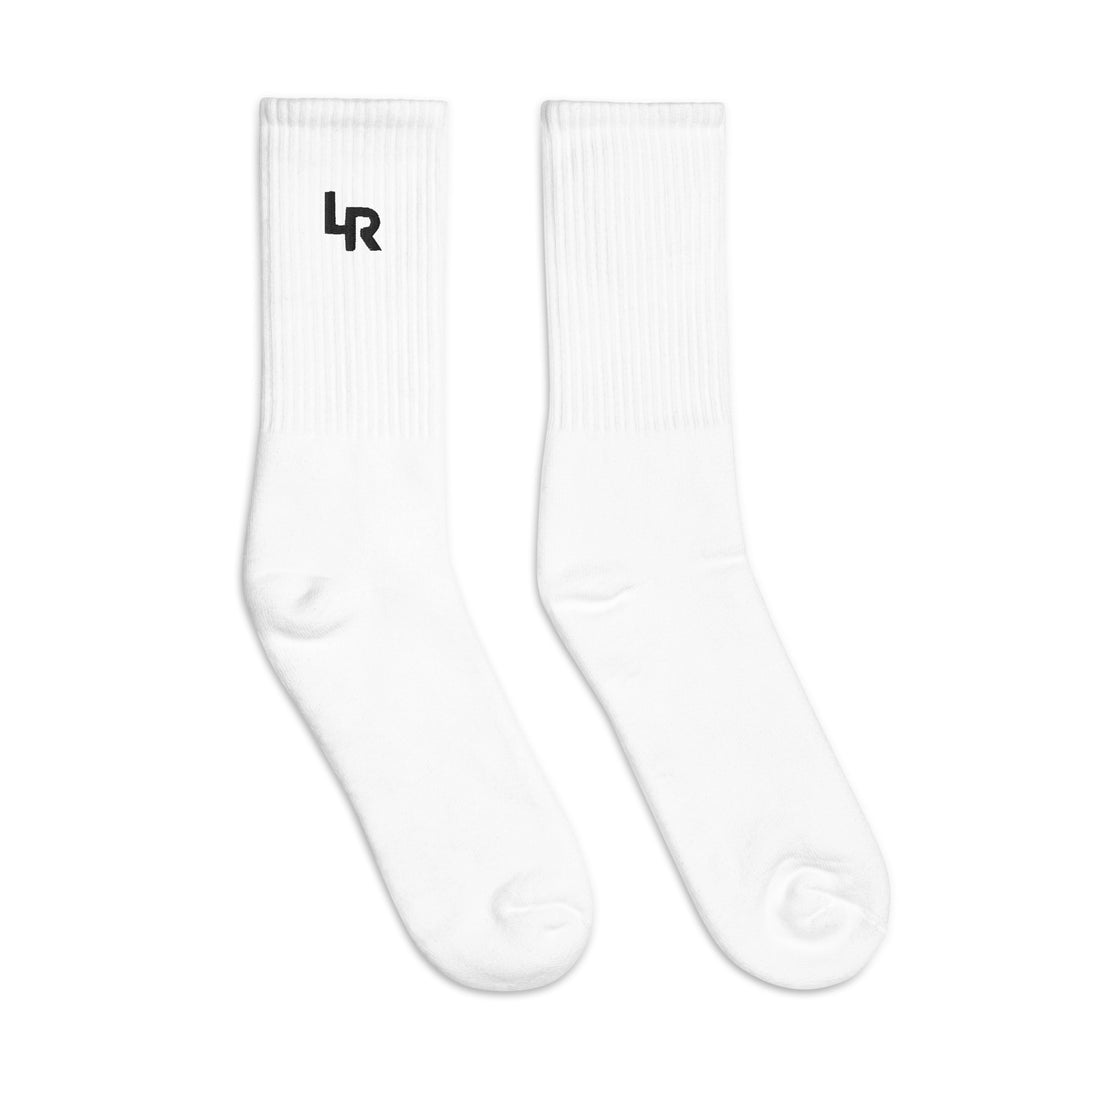 White Performance Socks